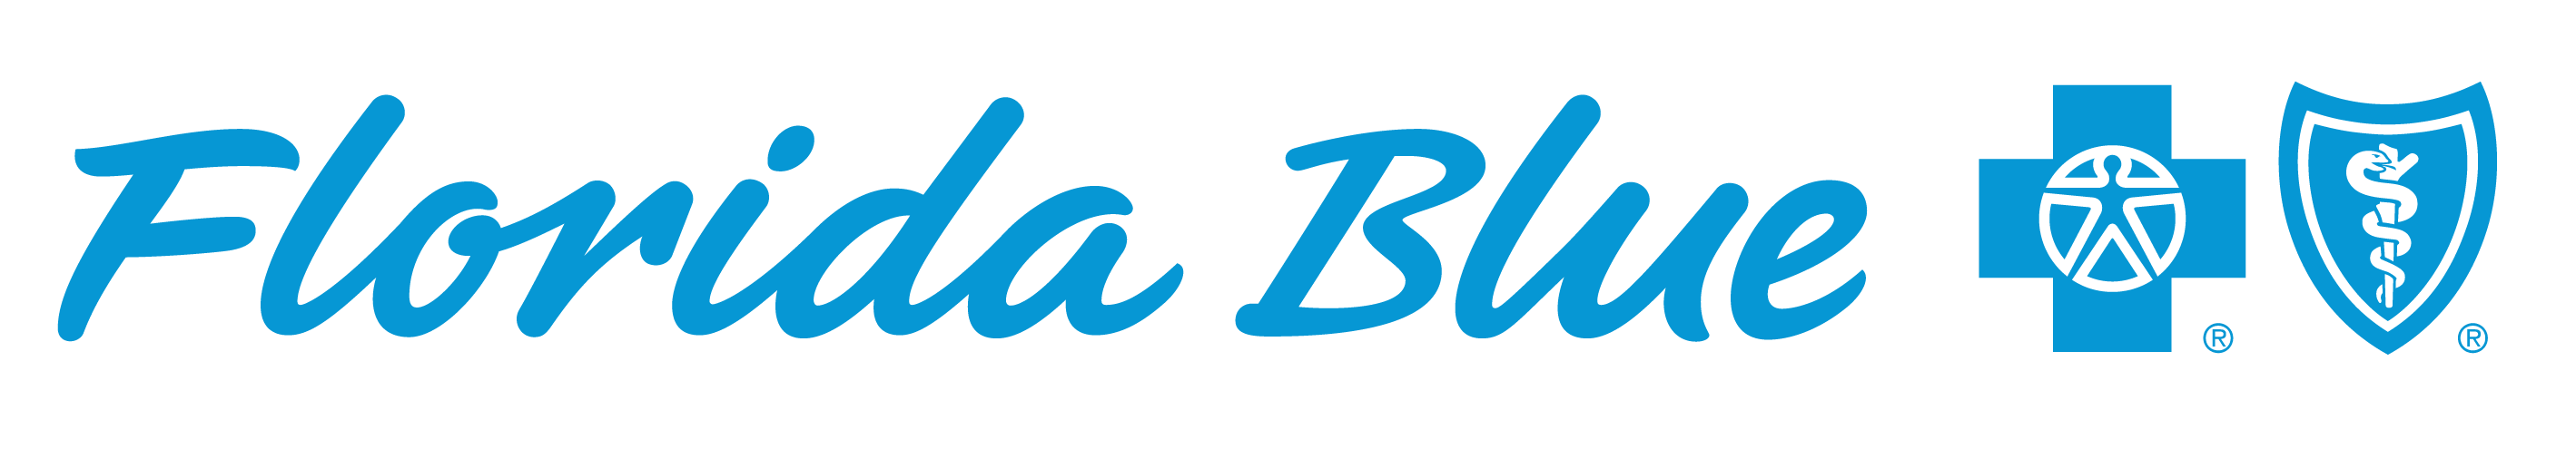 Florida Blue Logo - Florida blue Logos